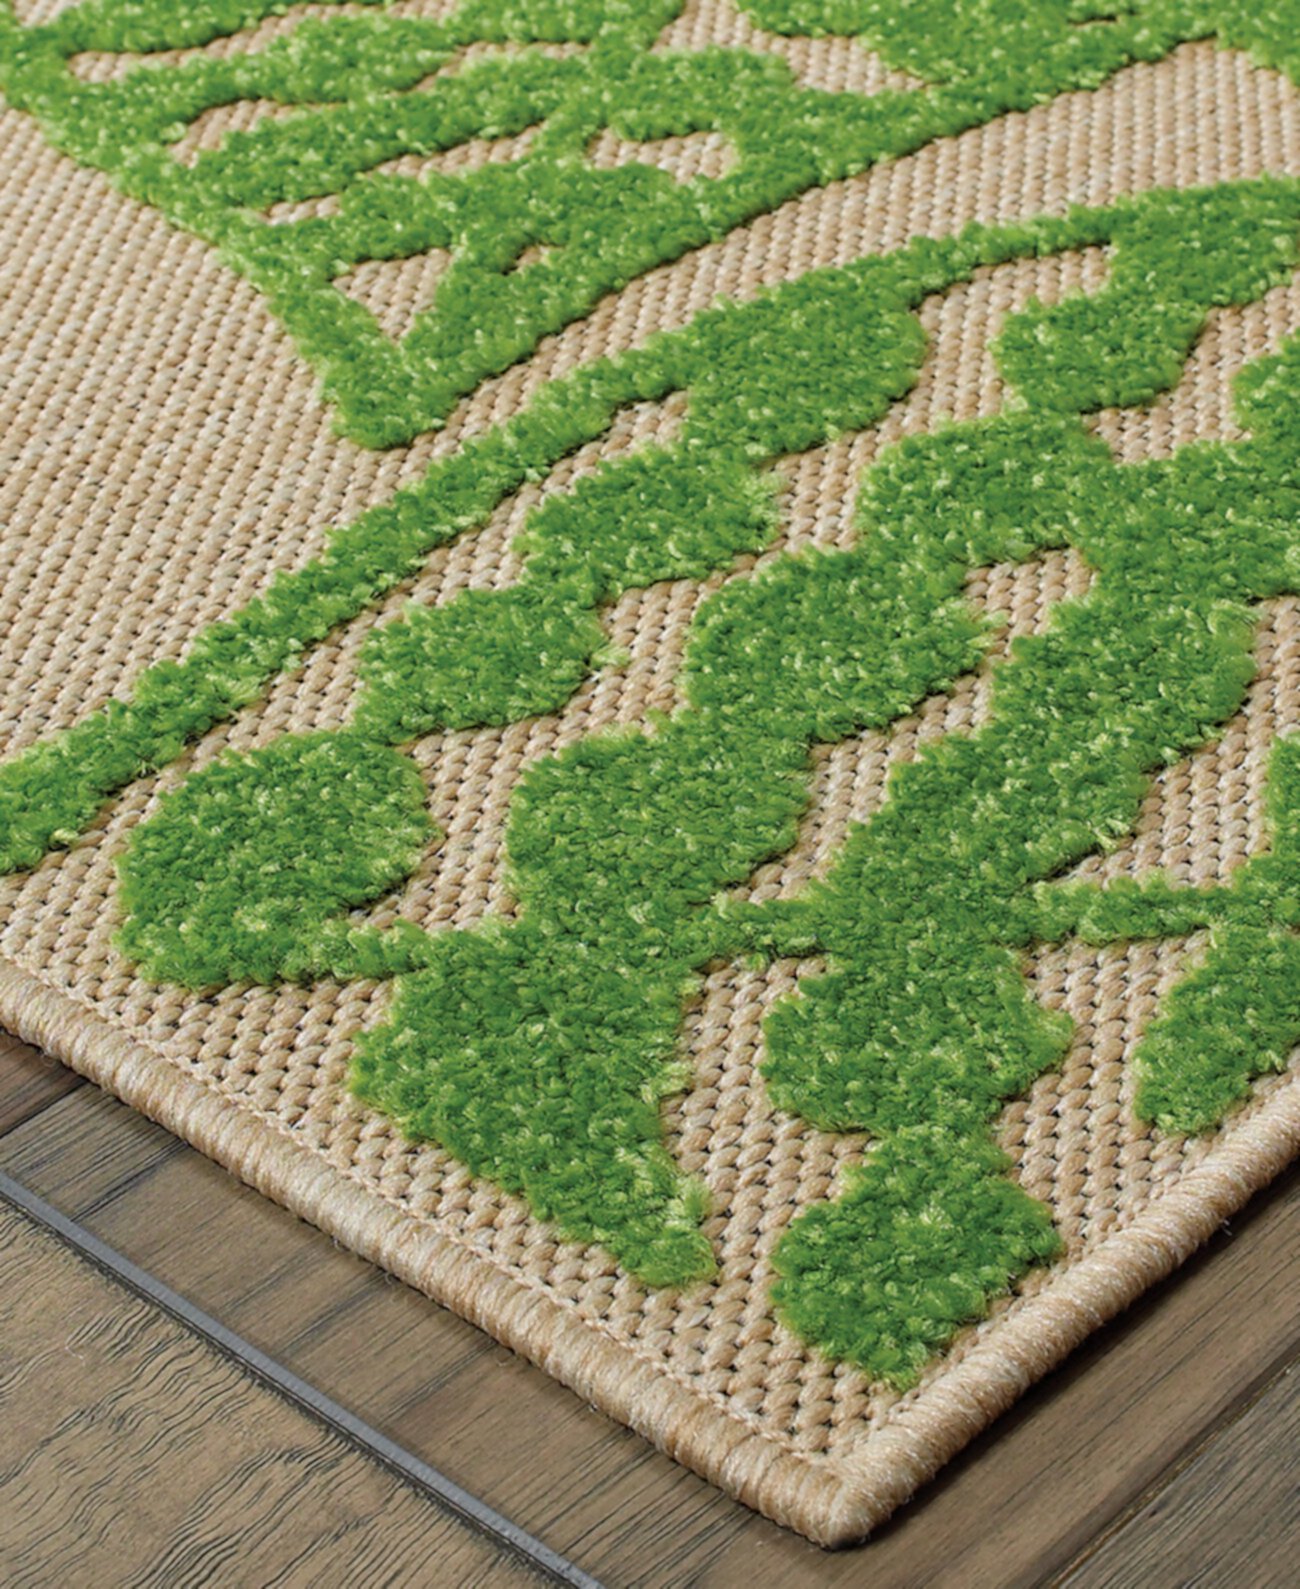 Cayman 566F9 Песочный/зеленый коврик размером 6 футов 7 x 9 футов 6 дюймов для внутреннего/наружного использования Oriental Weavers